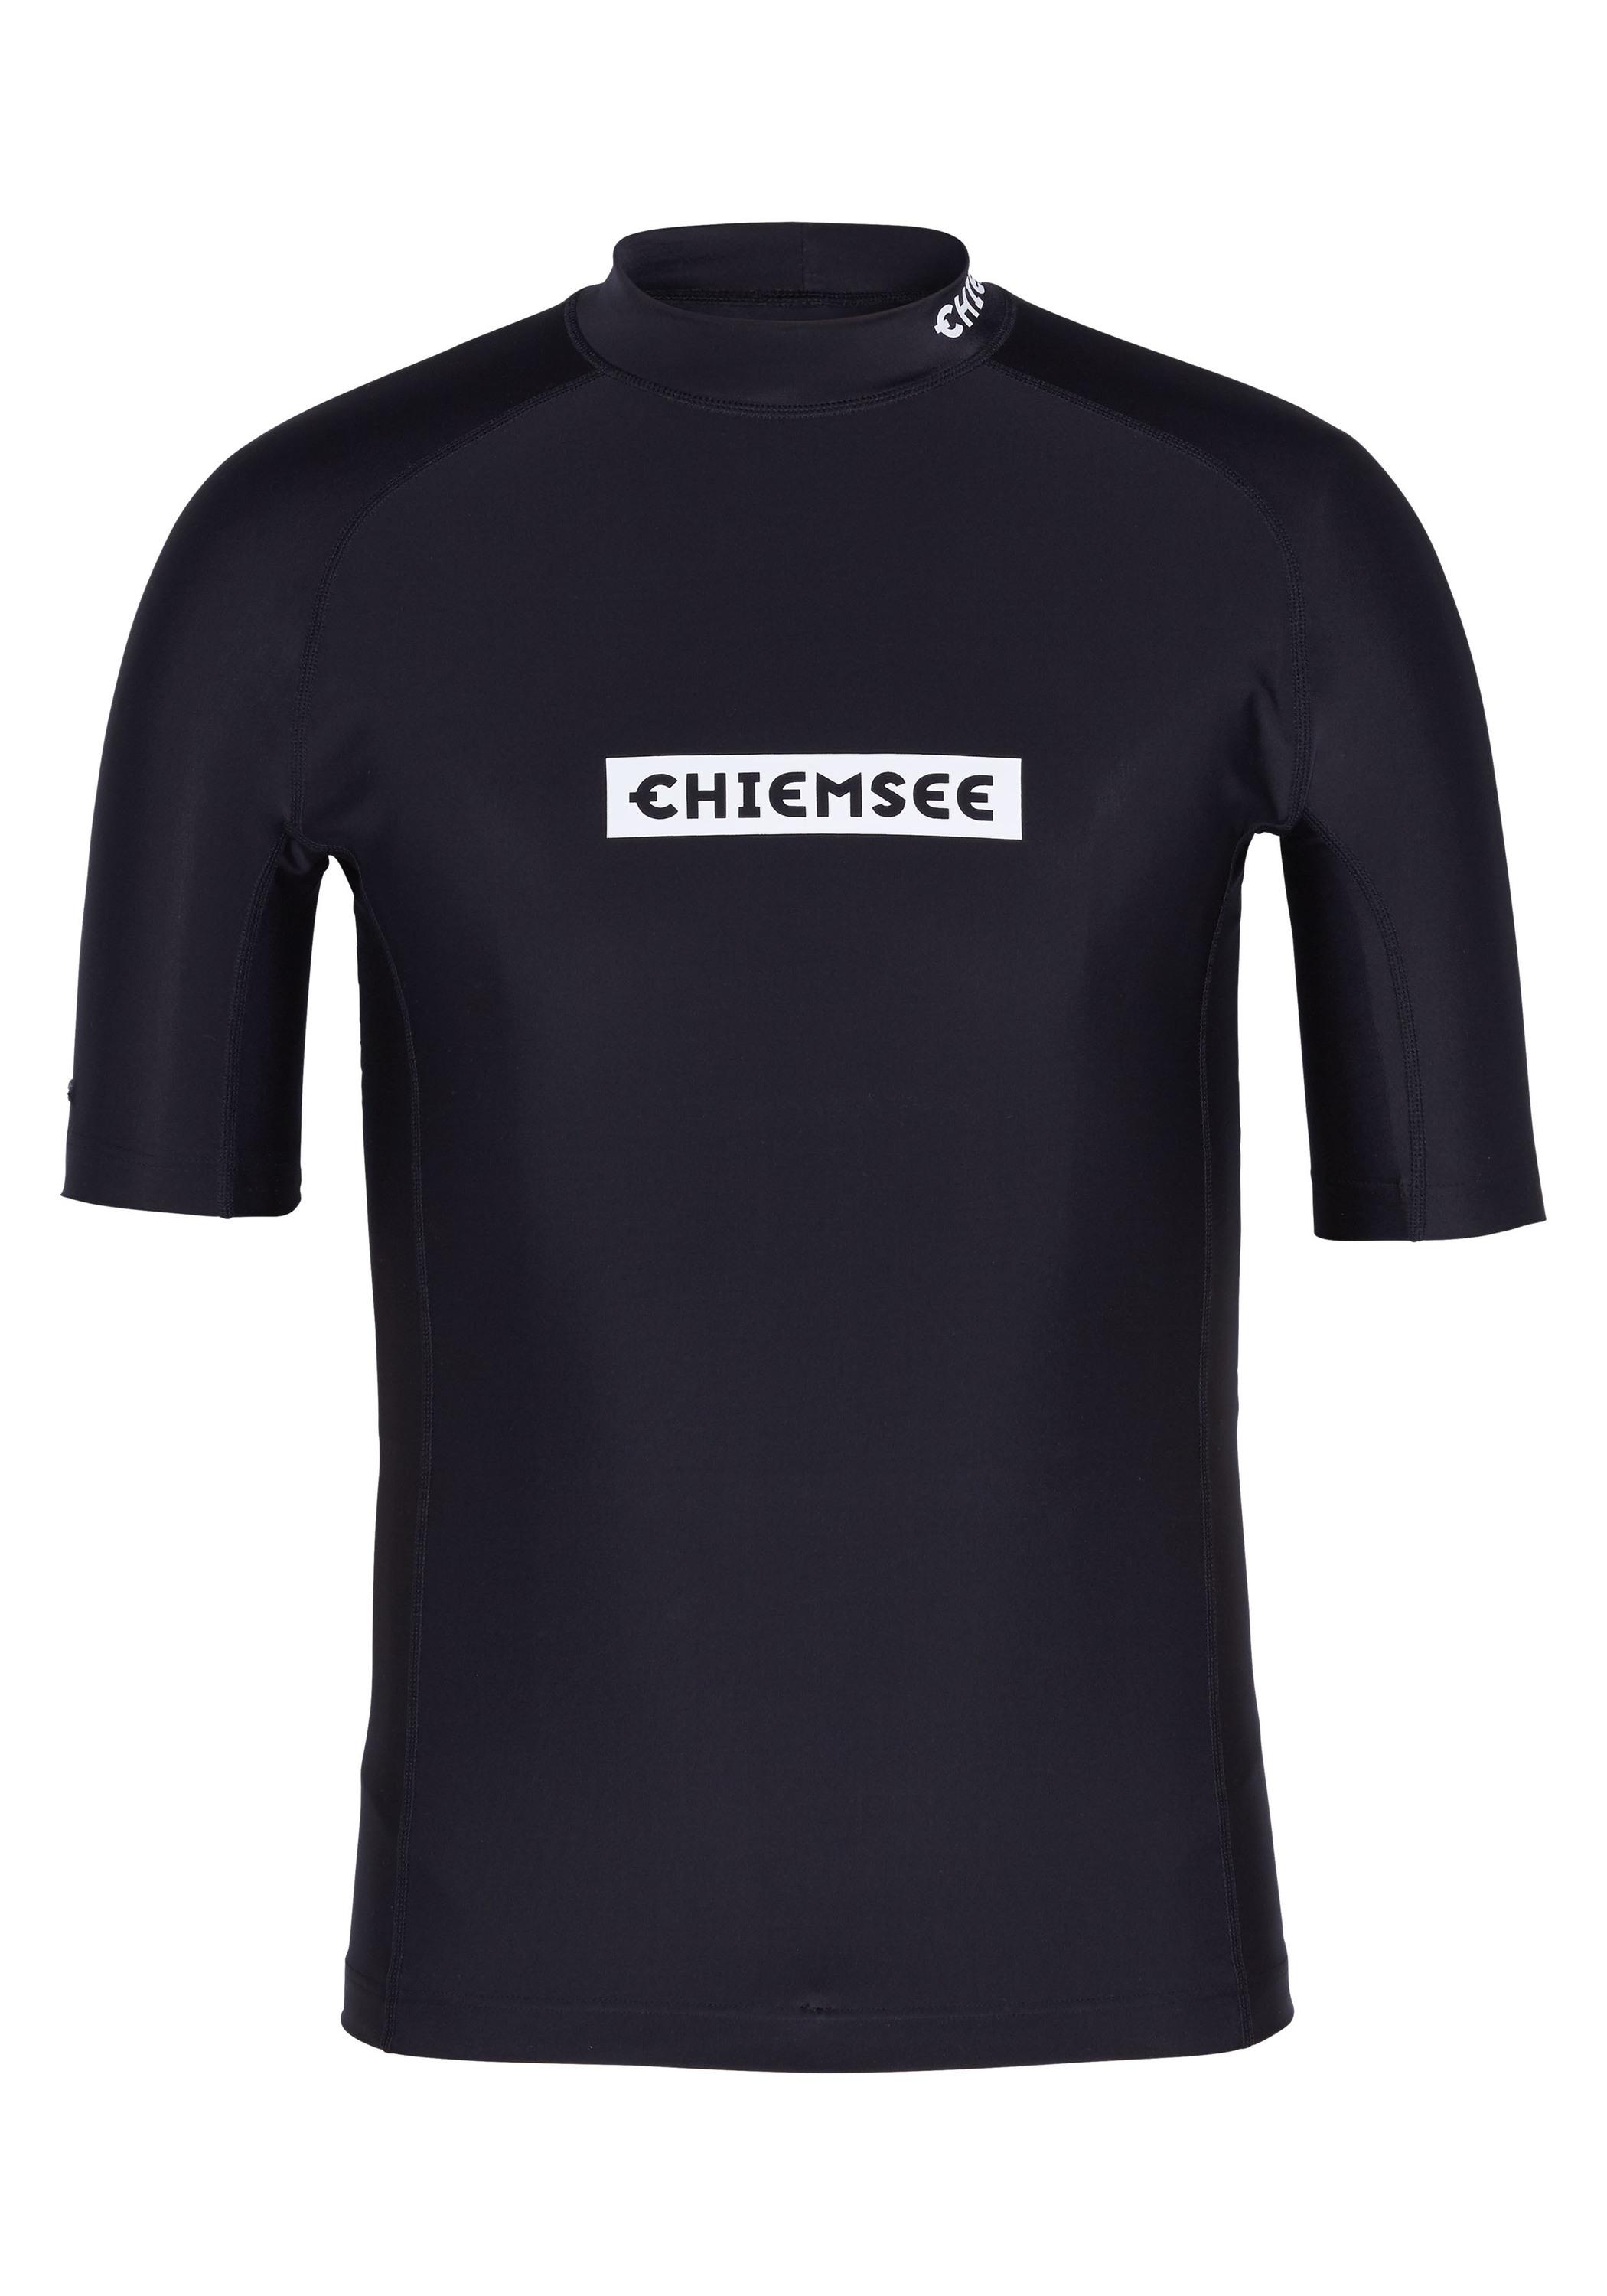 Chiemsee Badeshirt Surf Shirt Deep kaufen new von Online Shop Black SportScheck im